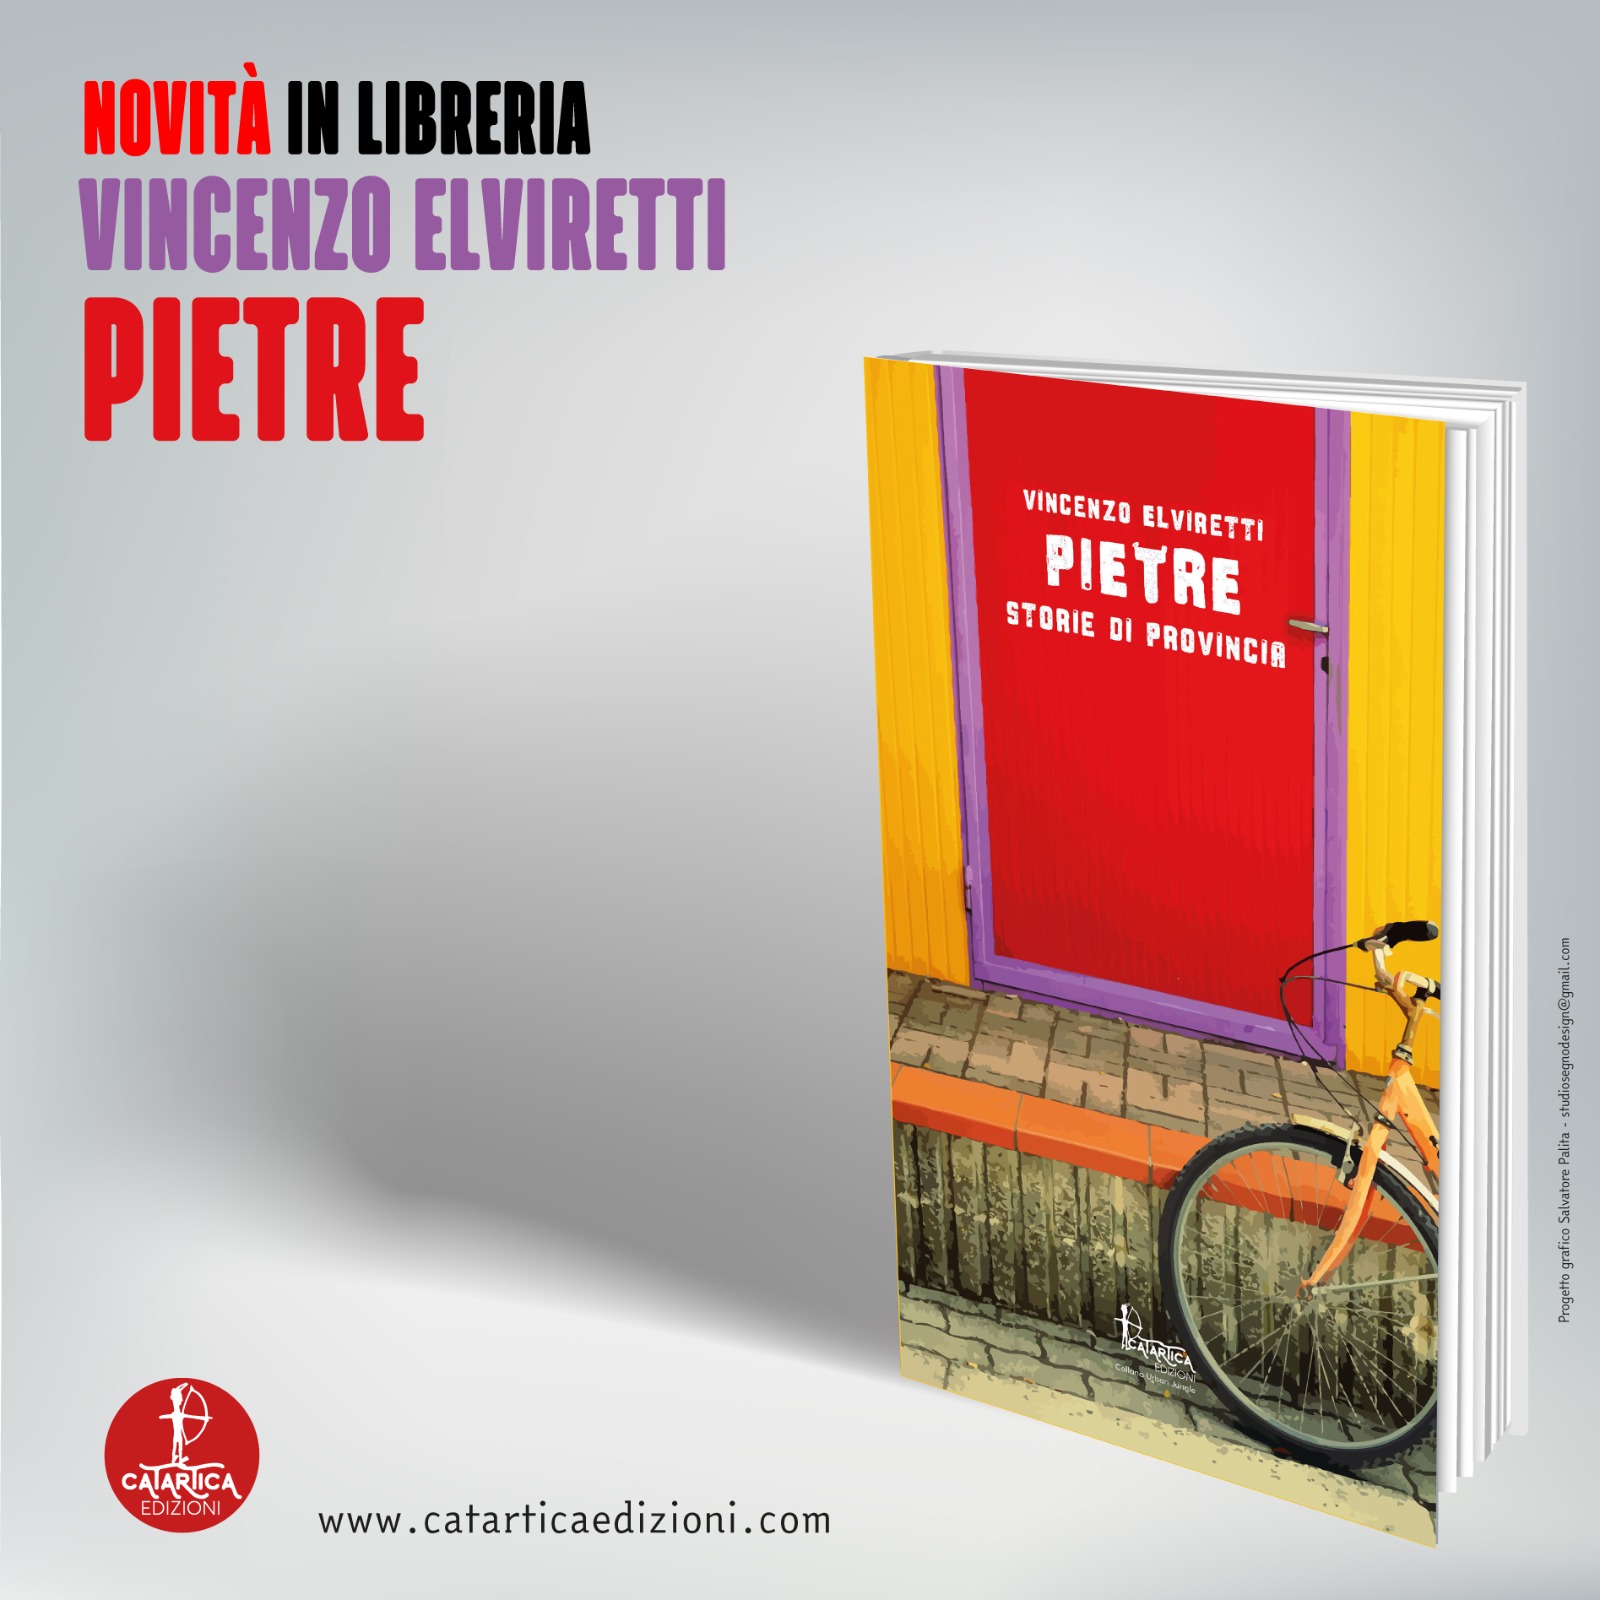 https://www.agenziaeventi.org/immagini_news/2643/pietre-il-nuovo-libro-di-vincenzo-elviretti-storie-di-marginalita-e-di-provincia-2643.jpg